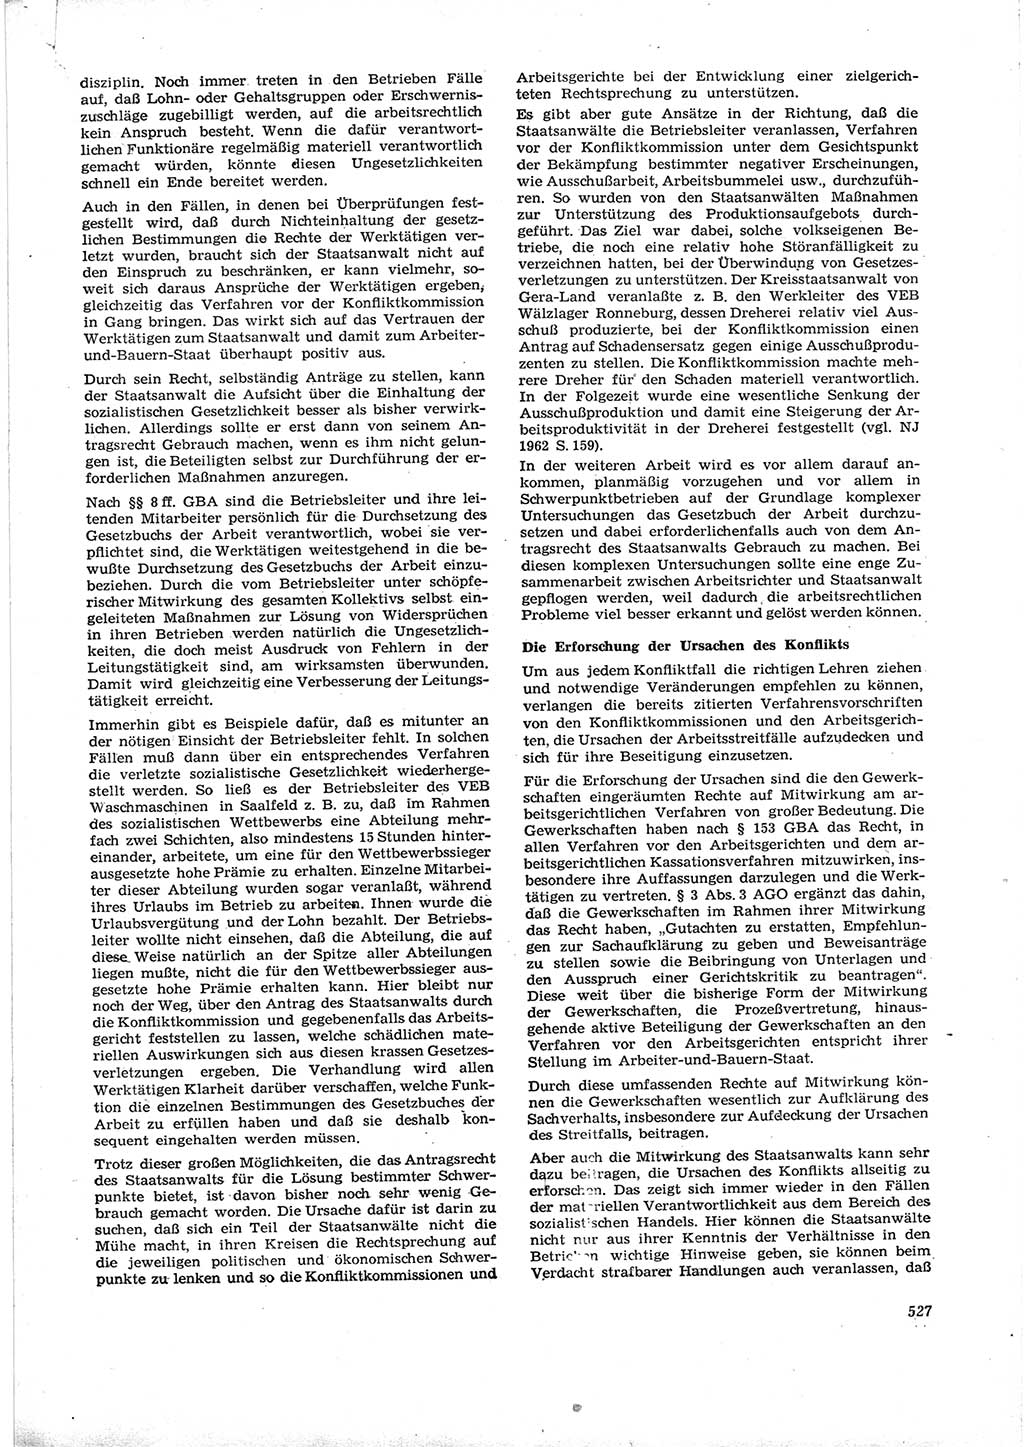 Neue Justiz (NJ), Zeitschrift für Recht und Rechtswissenschaft [Deutsche Demokratische Republik (DDR)], 16. Jahrgang 1962, Seite 527 (NJ DDR 1962, S. 527)